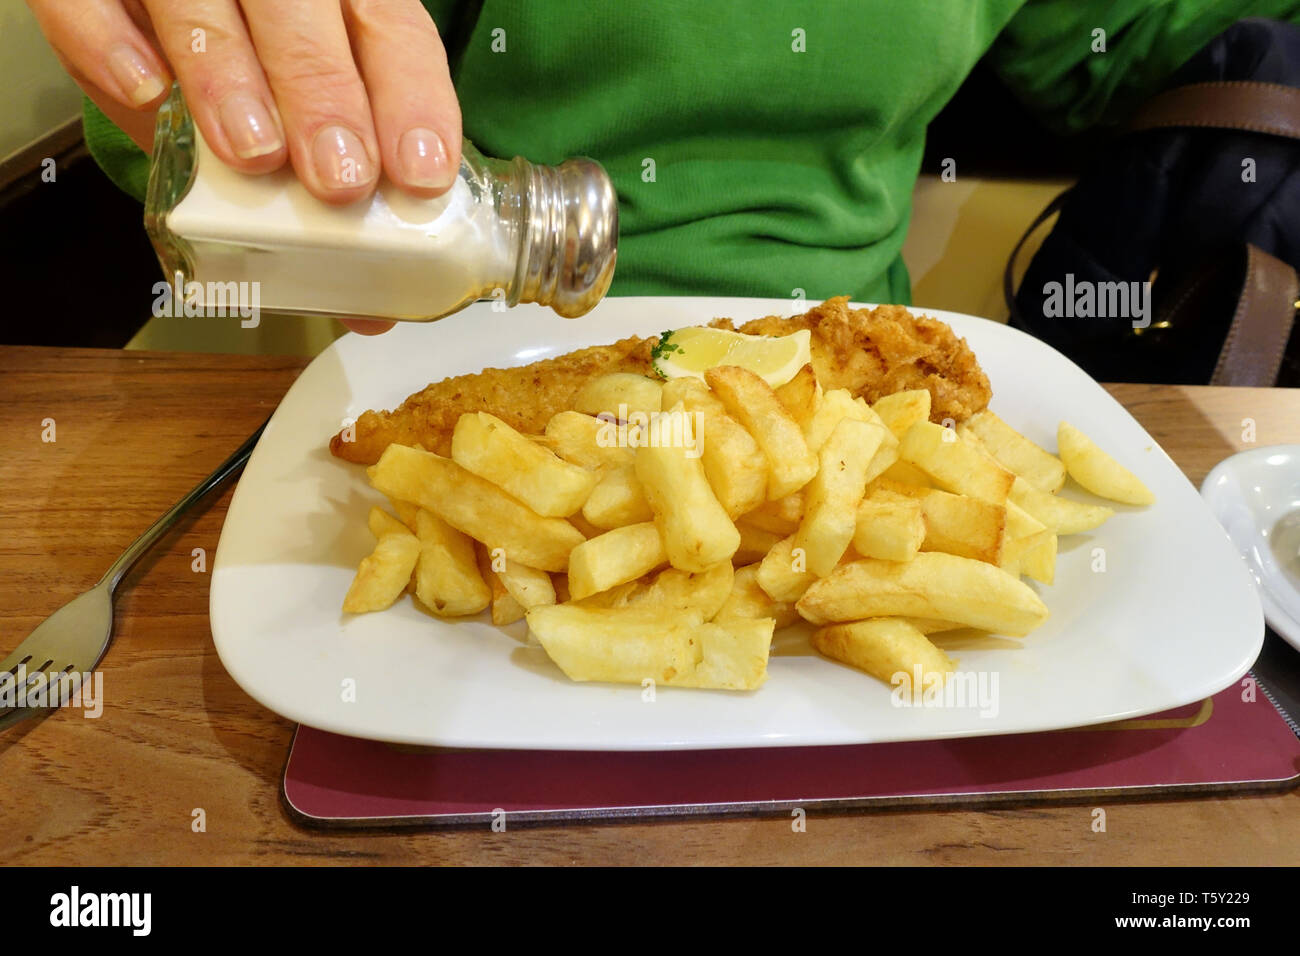 Un traditionnel fish and chips anglais repas servi sur une table dans un restaurant fish and chips. Les plaques contient des plaquettes et battues, morue plateau Banque D'Images